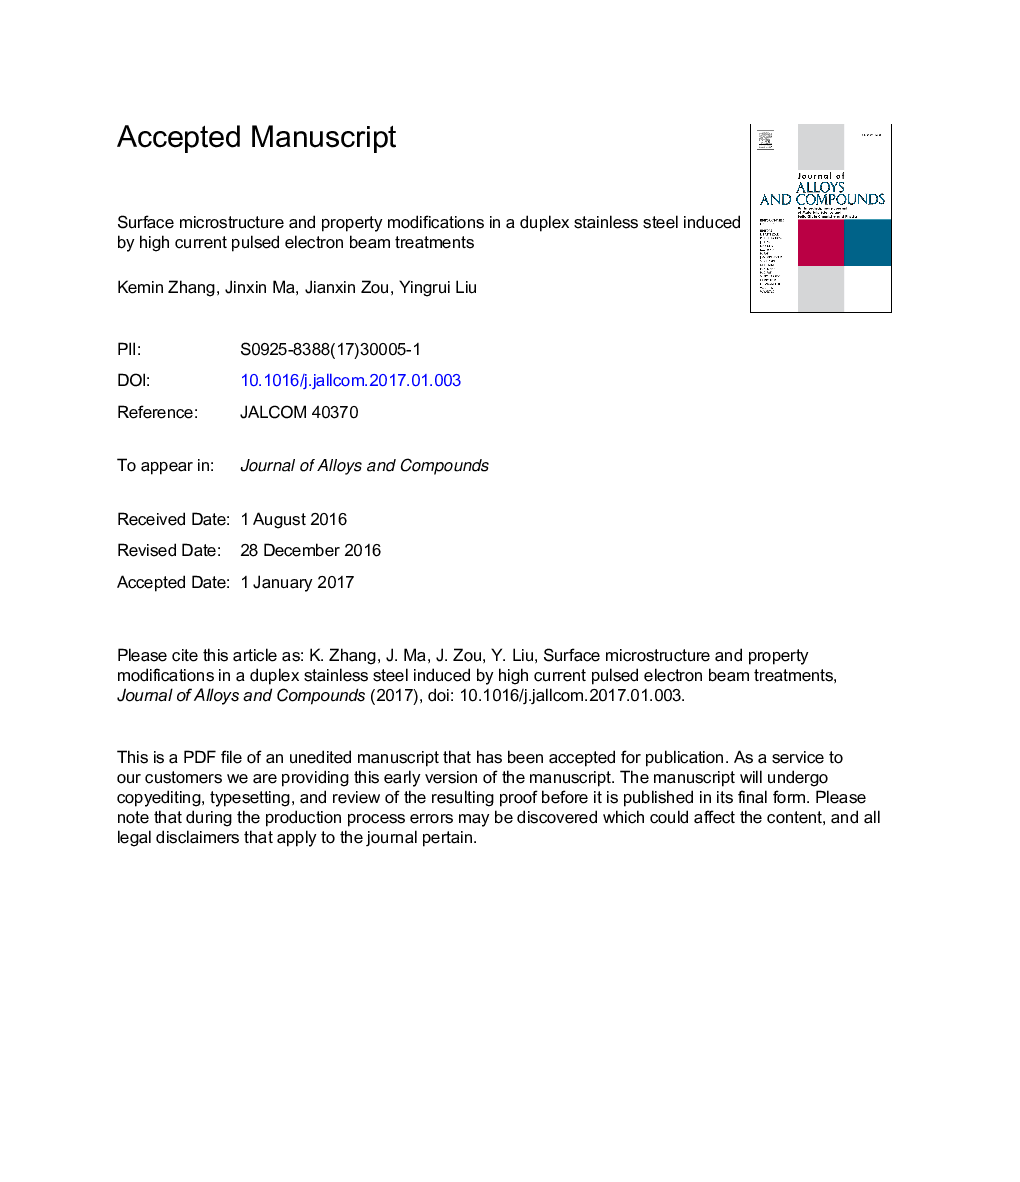 ریزساختار سطح و تغییرات اموال در یک فولاد ضد زنگ دوبلکس القا شده توسط پرتوهای پرتو الکترونی با جریان بالا 